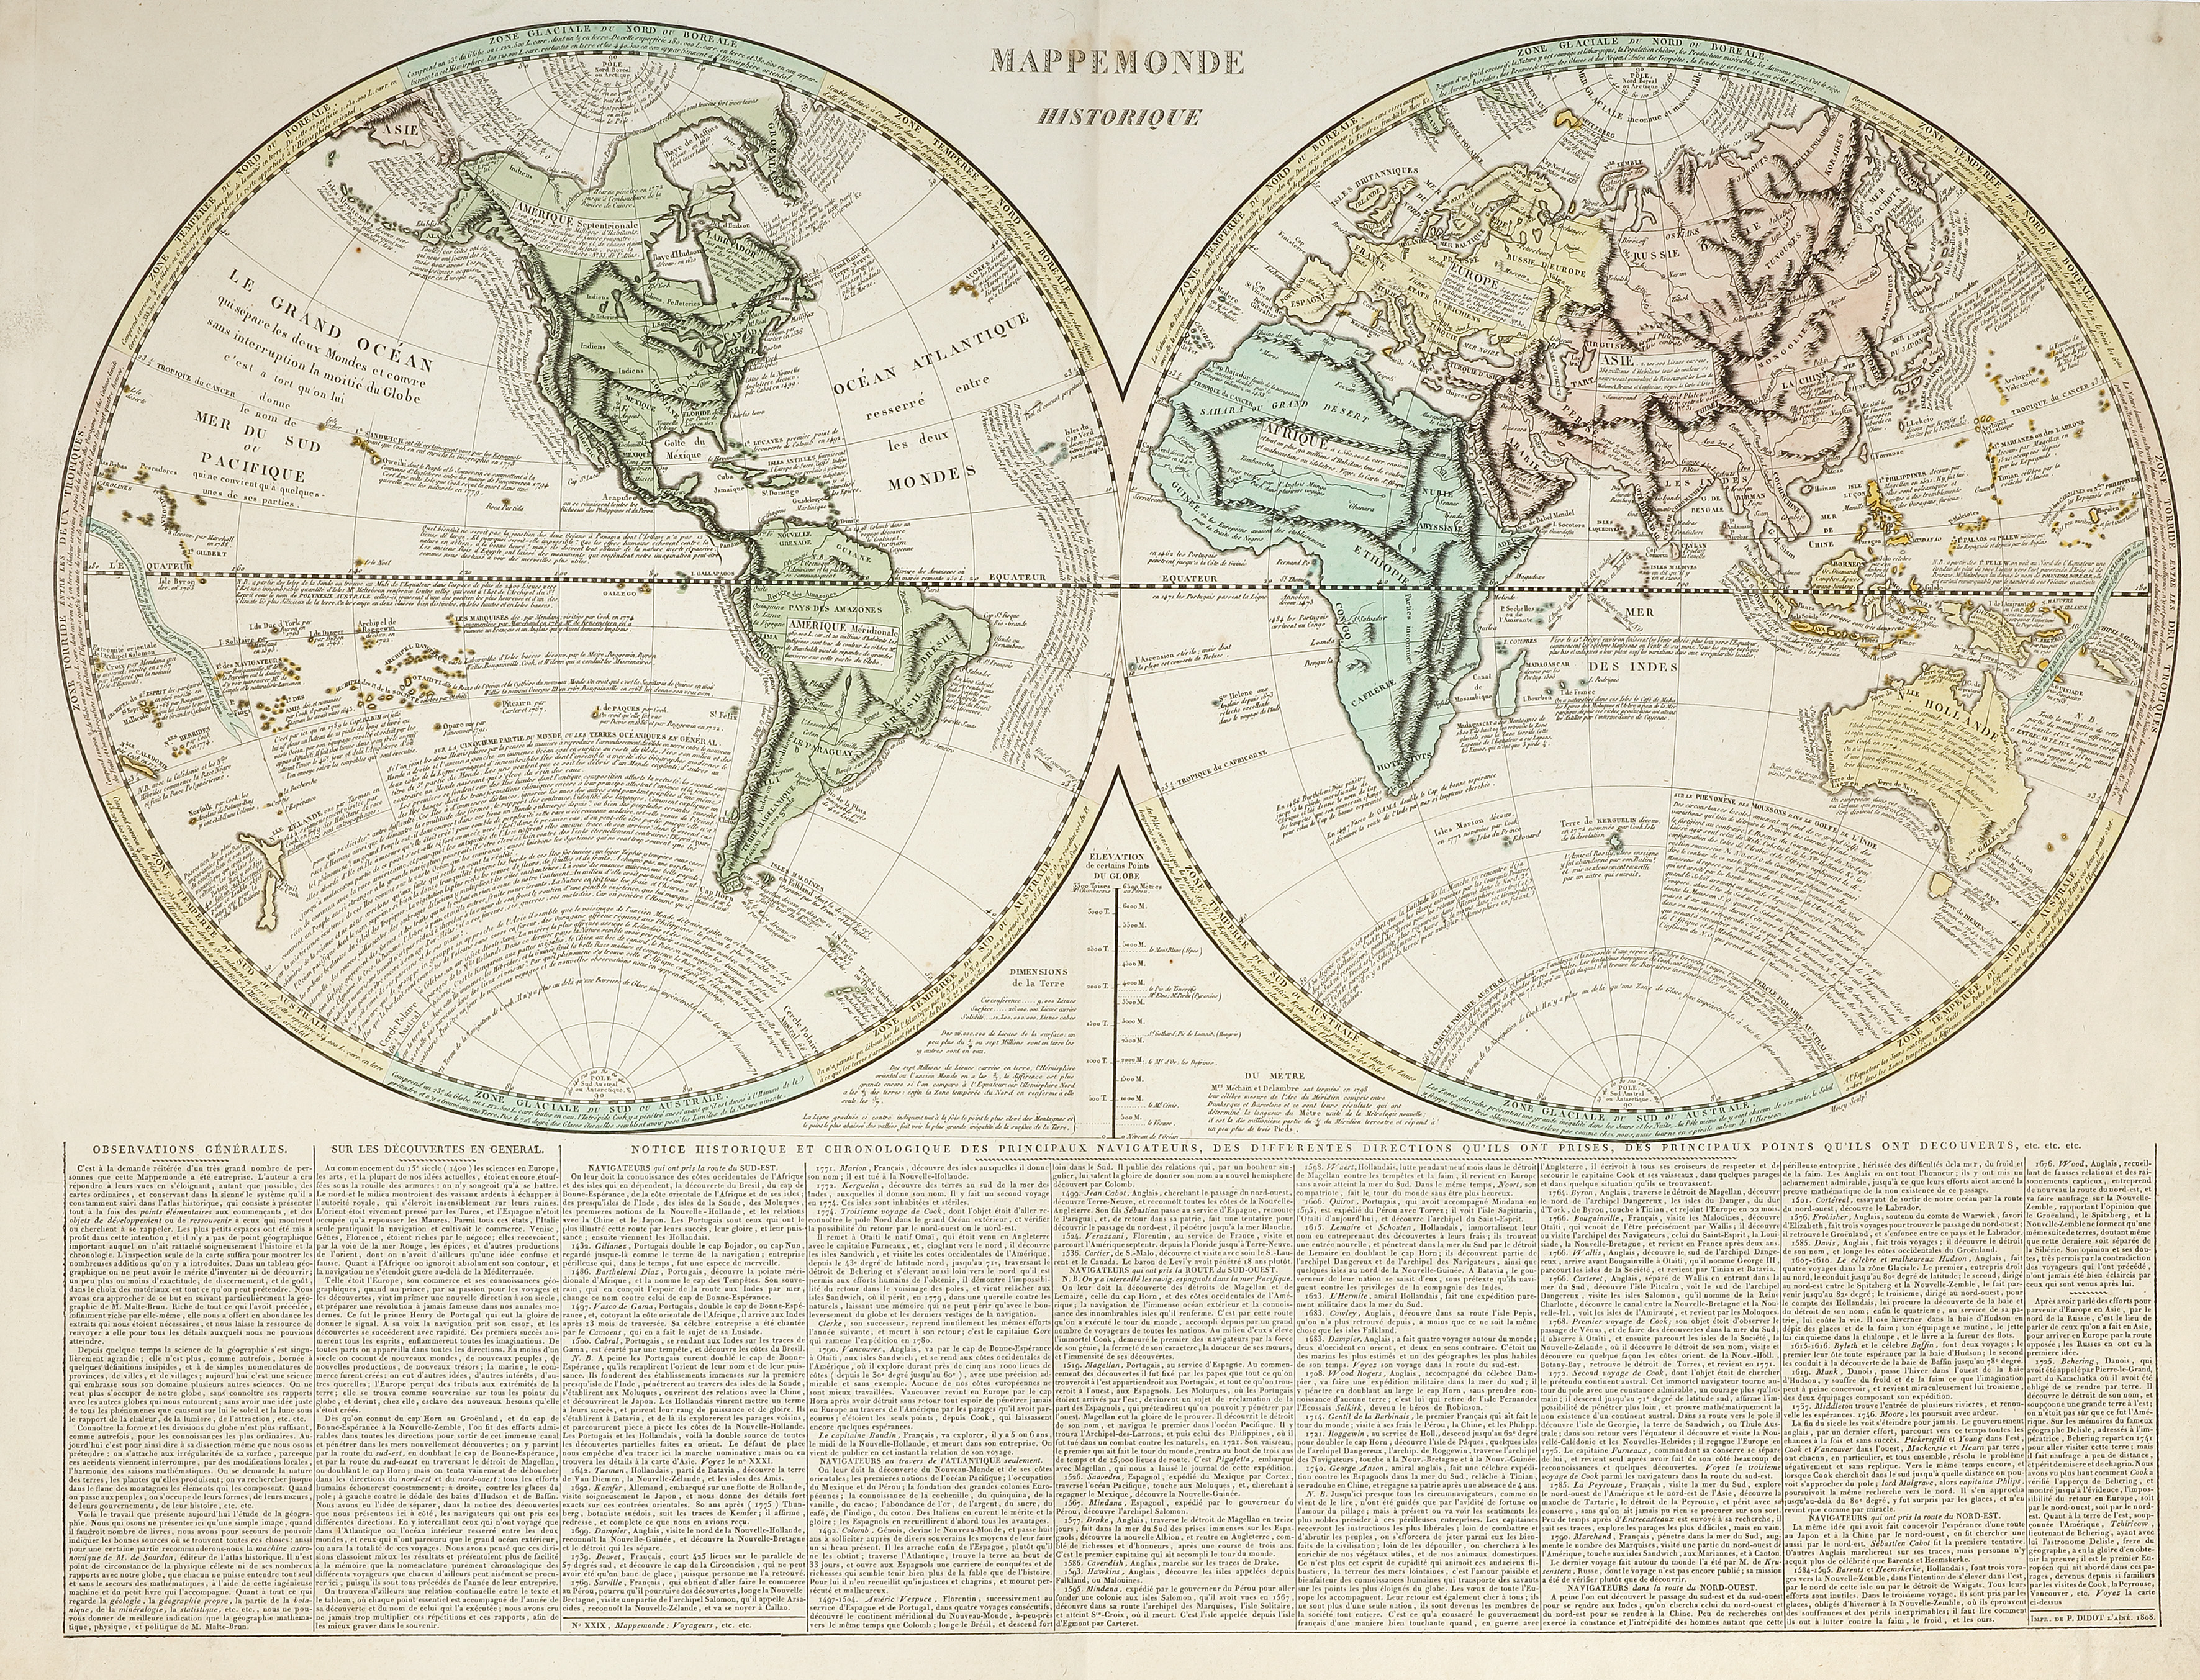 Mappe Monde Historique - Antique Map from 1806